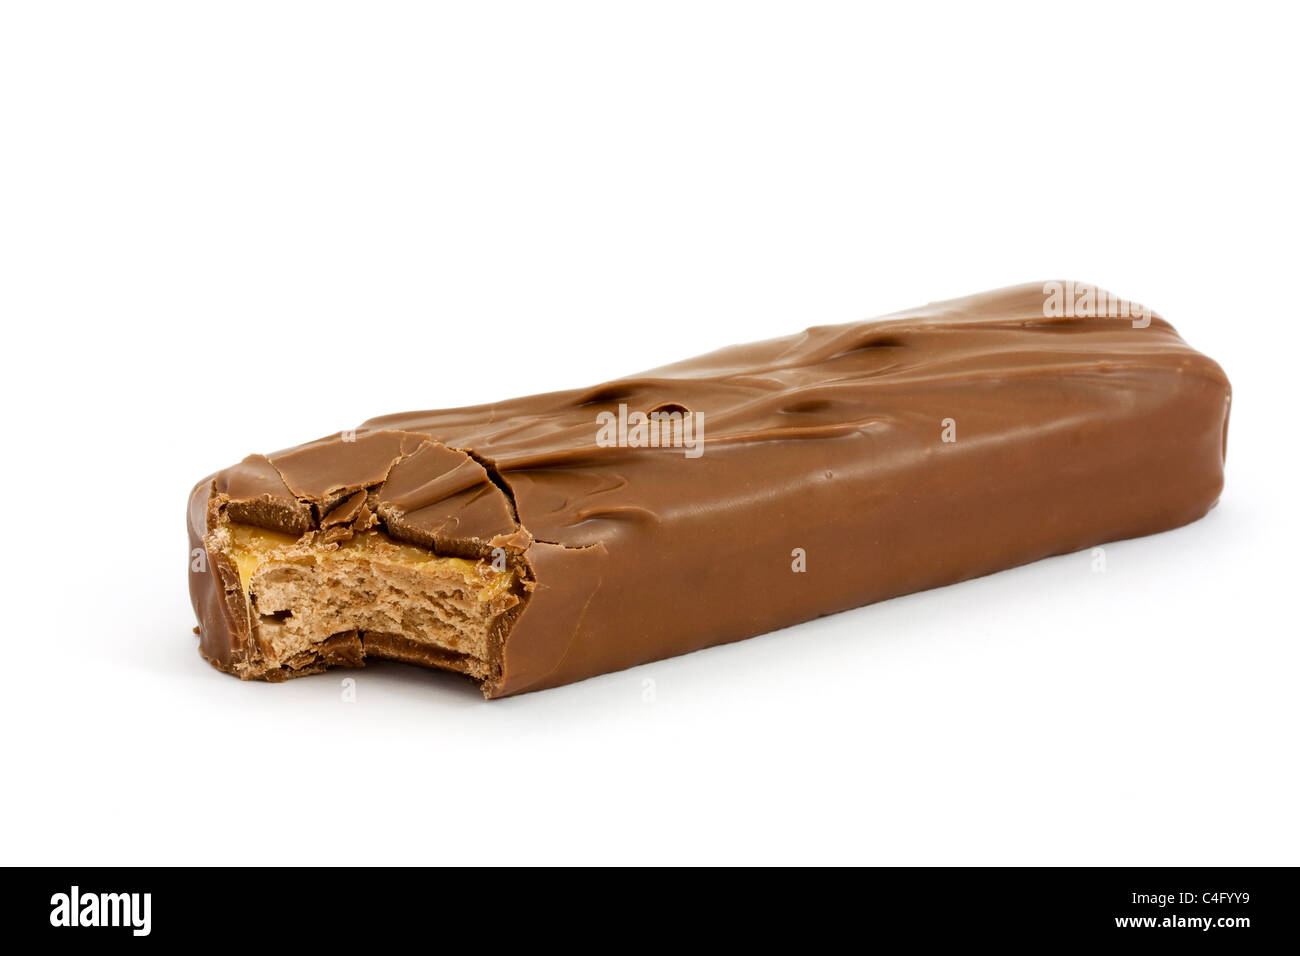 Überdachte Karamell und Nougat Schokolade isoliert auf weiss mit einem fehlenden Biss Stockfoto